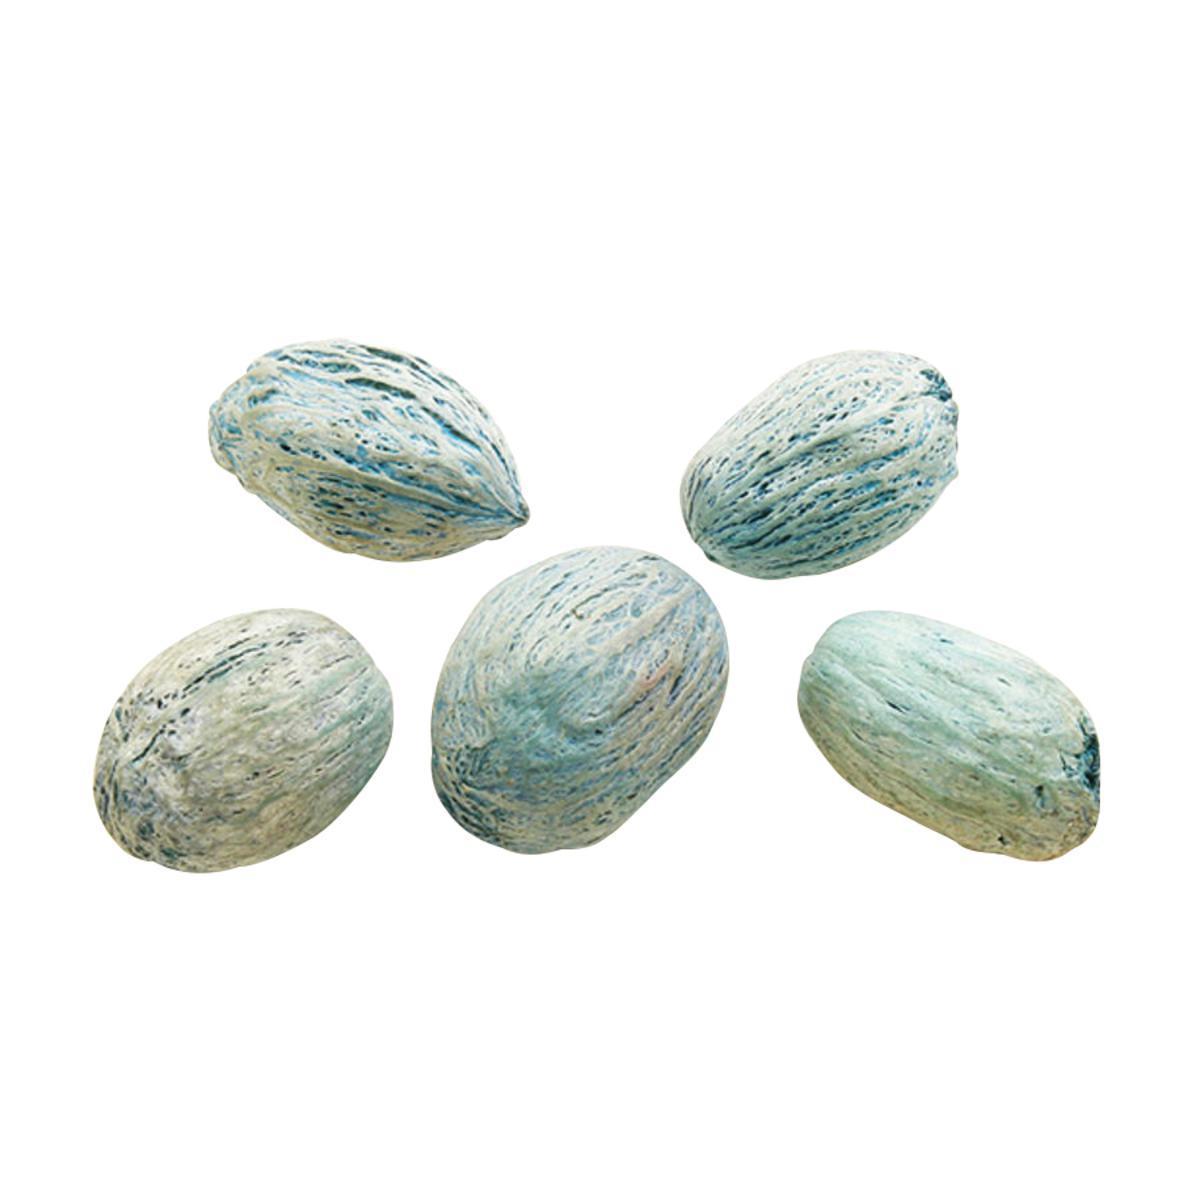 Graines décoratives colorées type noix - Végétal - 4 x 2,5 cm - Bleu turquoise